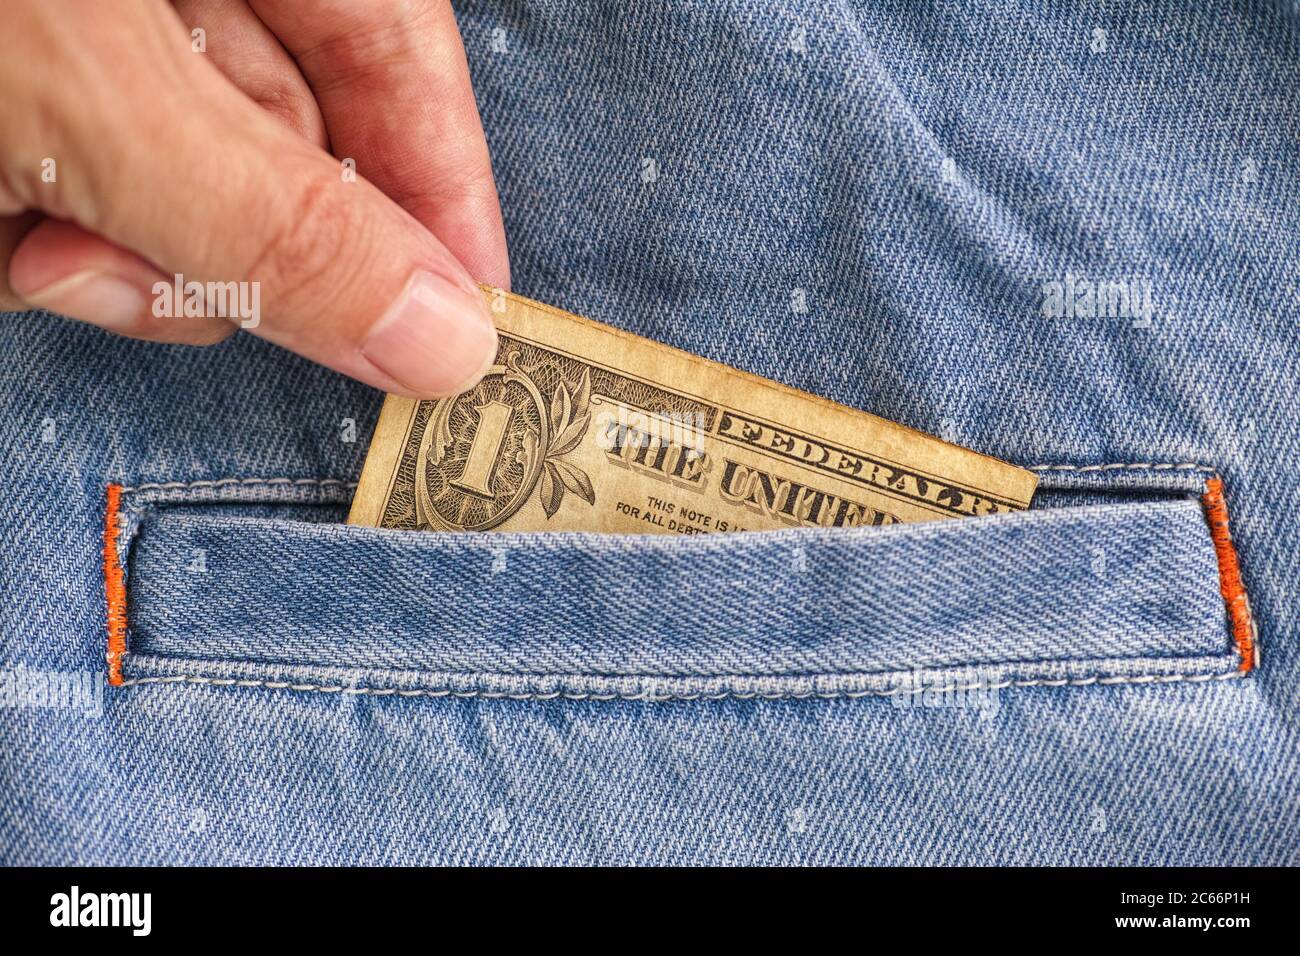 Personne qui prend un billet d'un dollar de poche de jeans. Gros plan. Banque D'Images